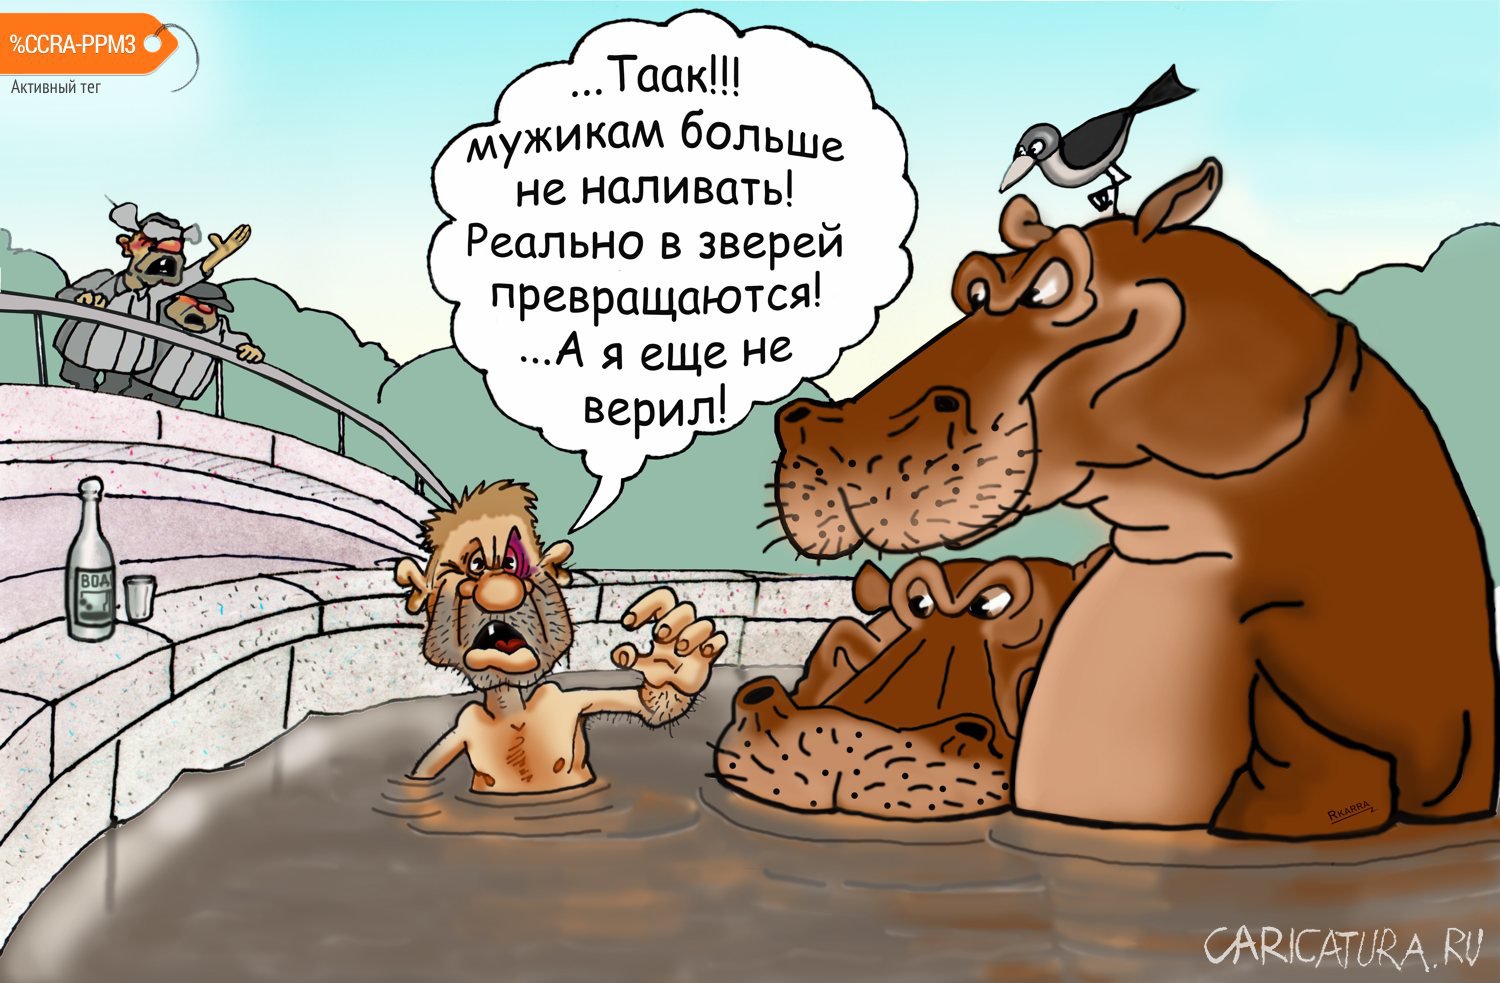 Карикатура "Не наливать", Раф Карин